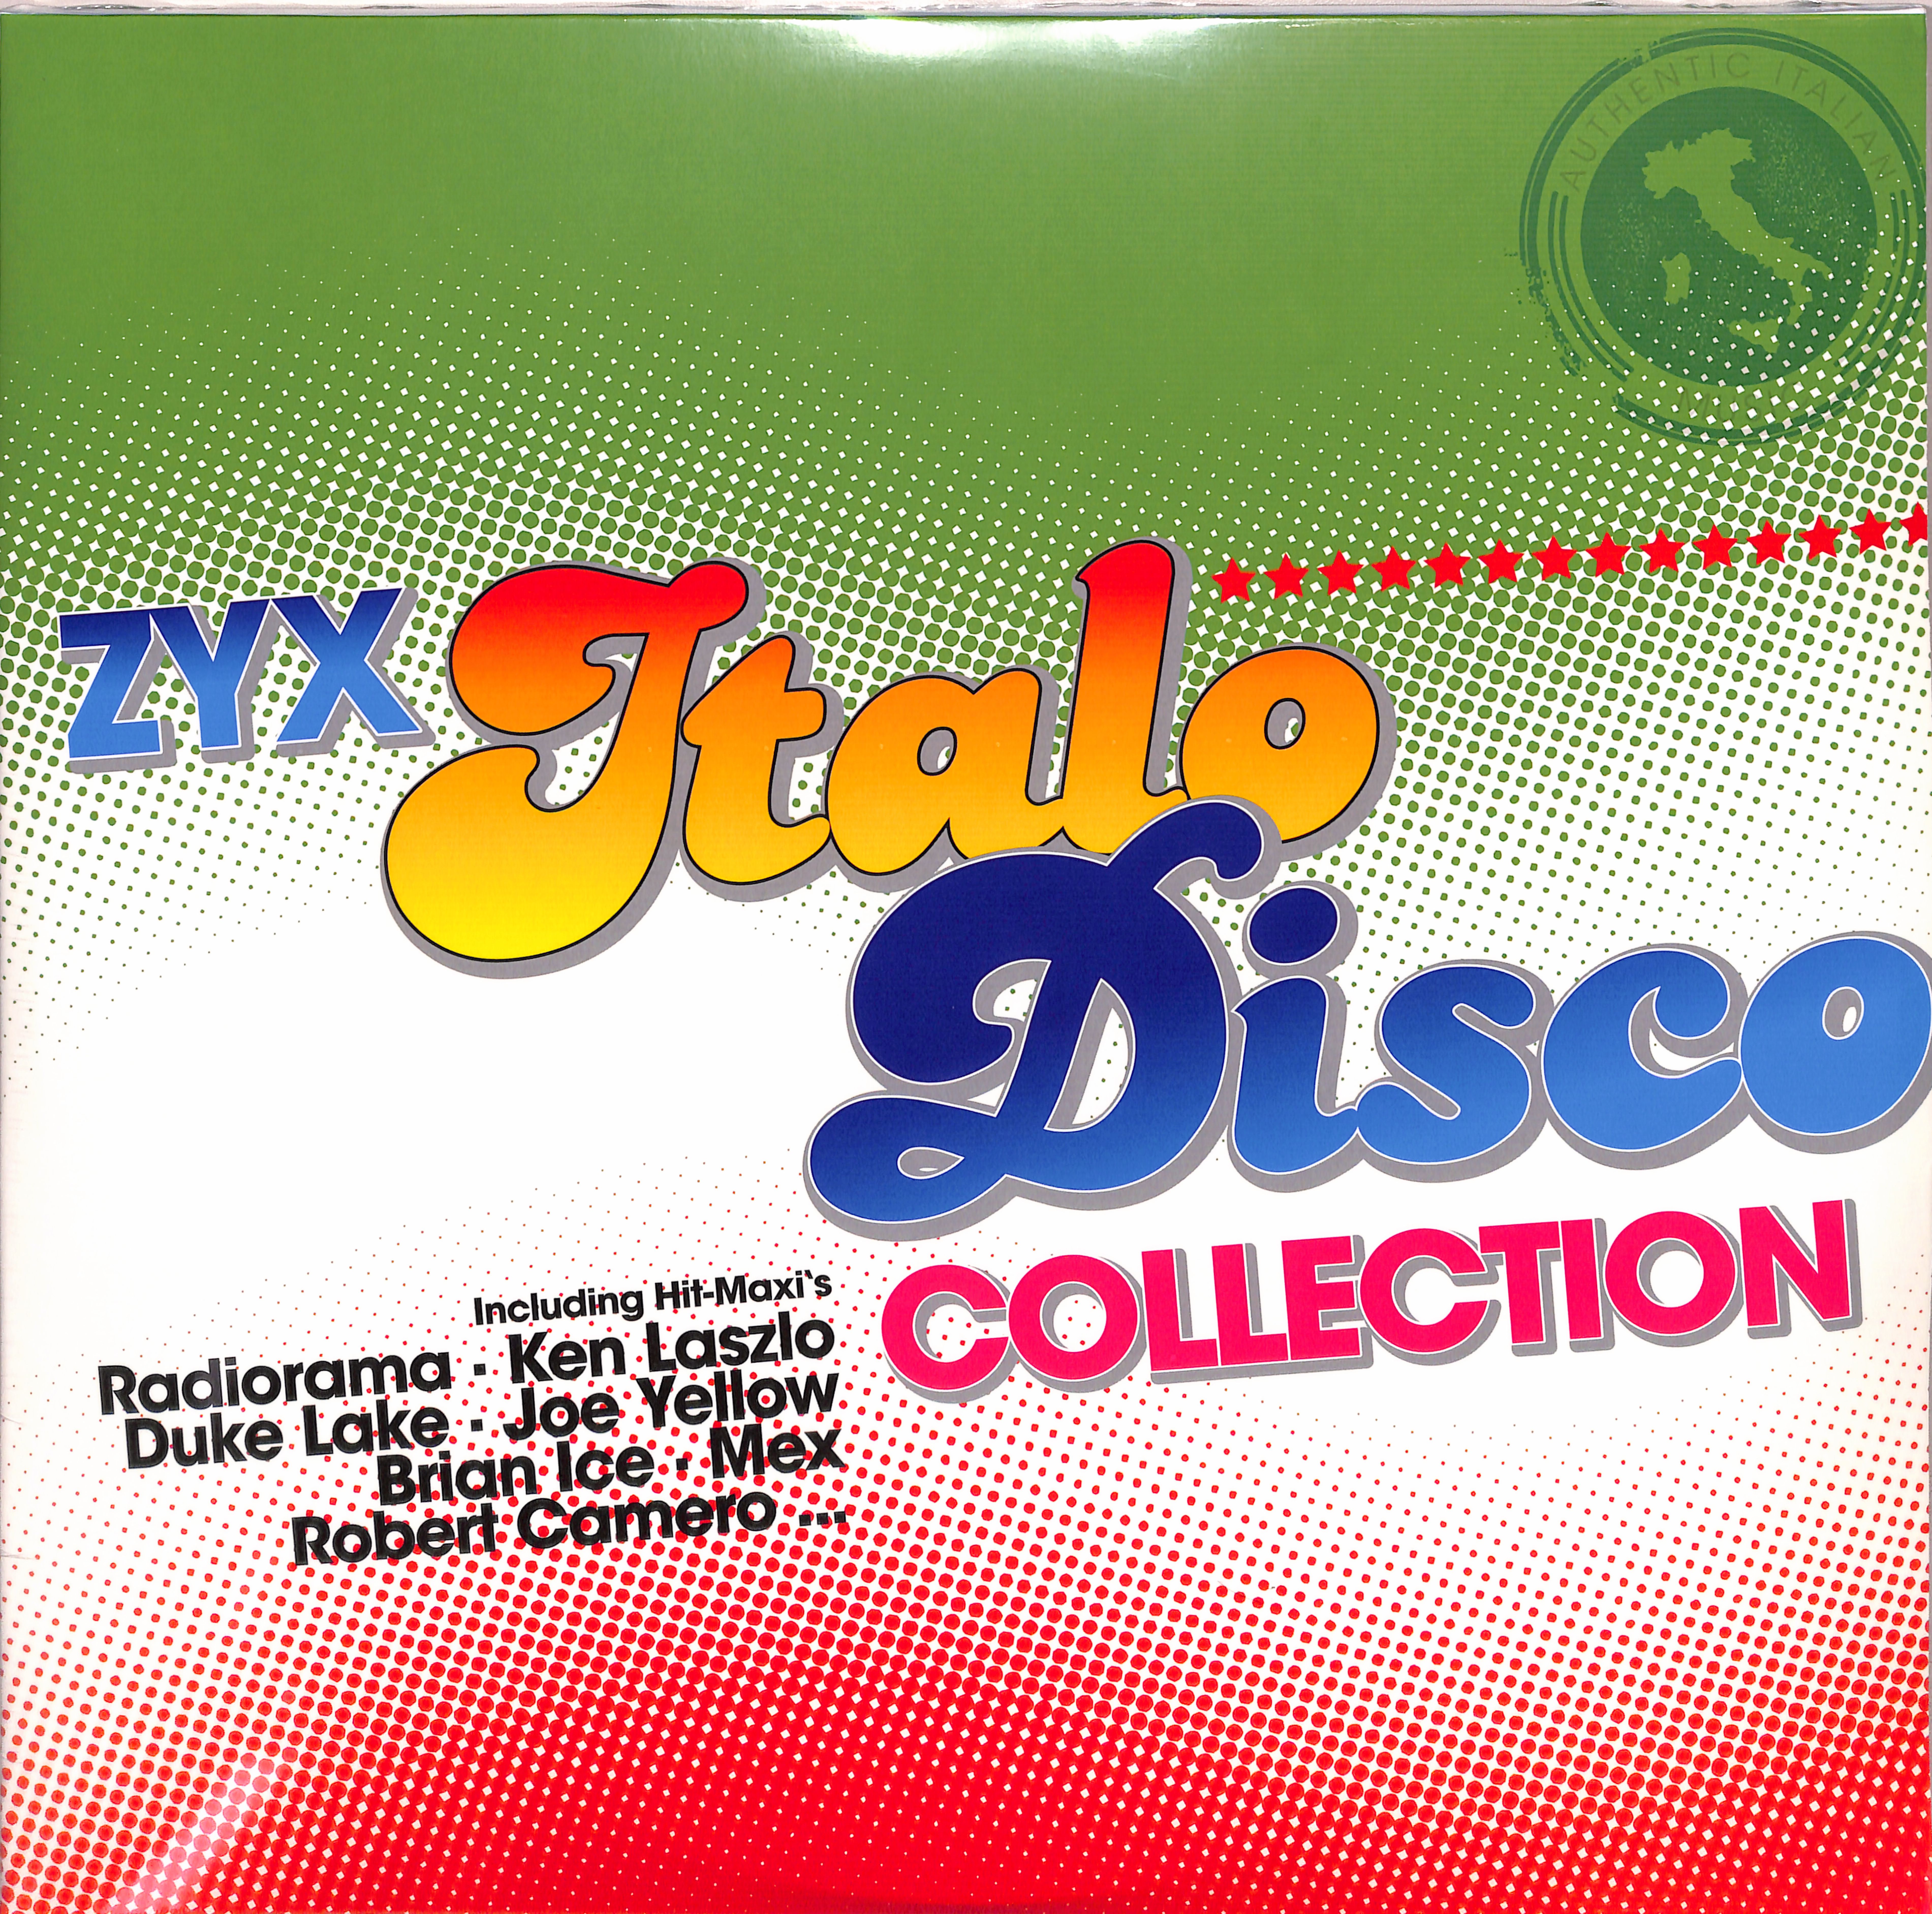 Zyx italo disco new. Italo Disco New Generation. Диско коллекция. The best of Italo Disco обложки. Radiorama LP.